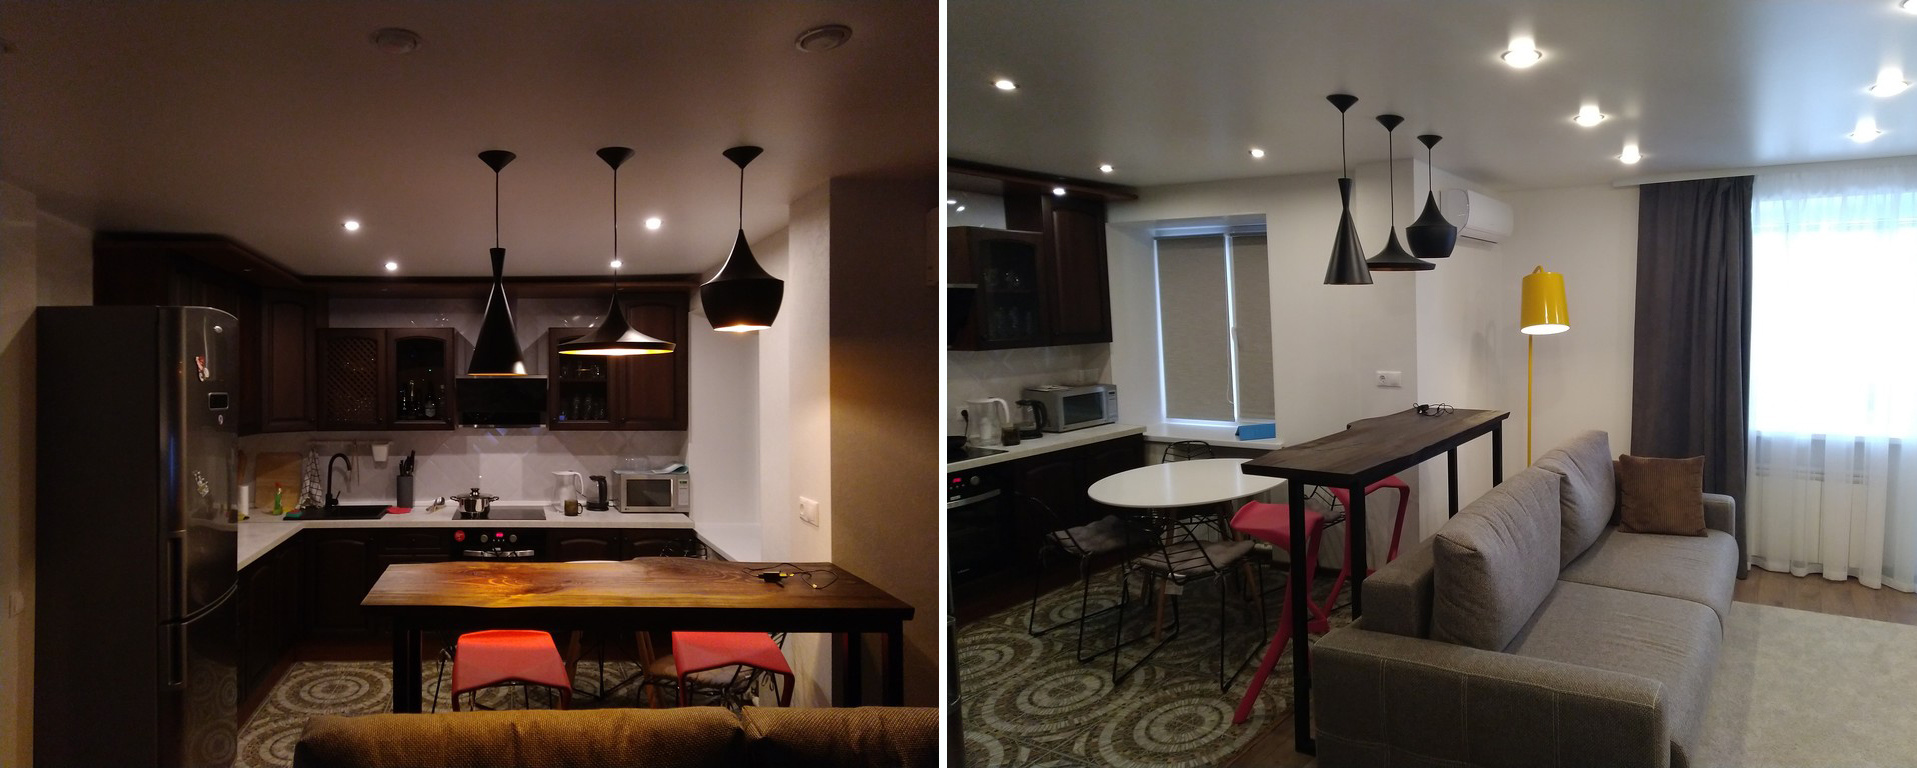 Стильные светильники отделяют кухонную зону